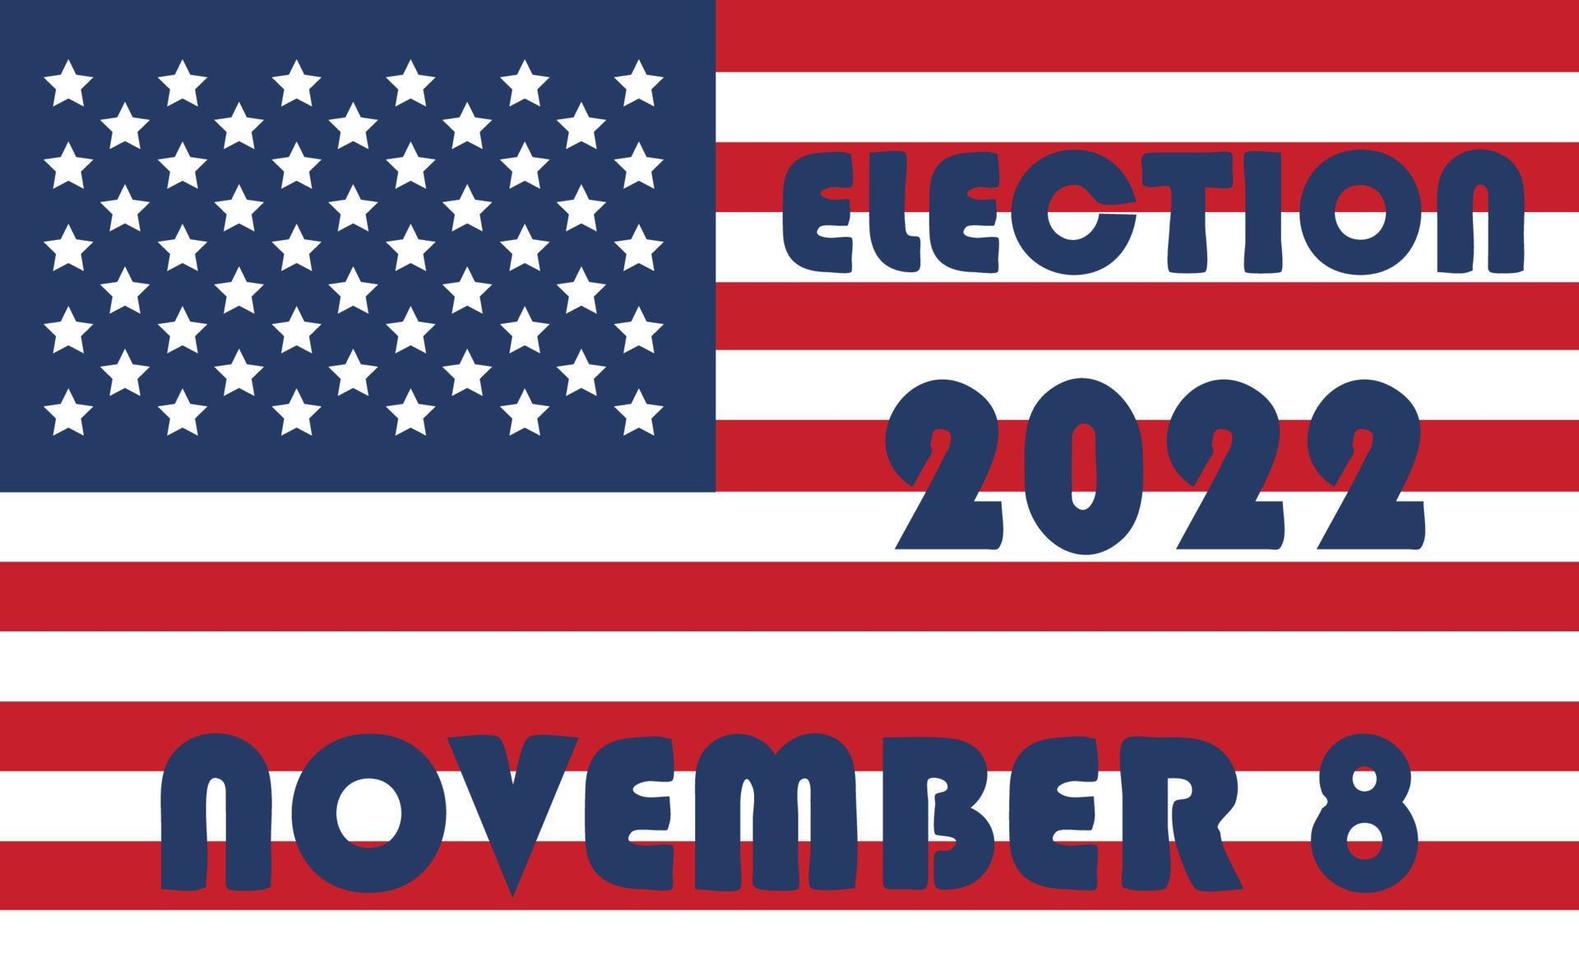 dag van middellange termijn verkiezingen. stemmen 2022 Verenigde Staten van Amerika, banier ontwerp. politiek verkiezing campagne vector